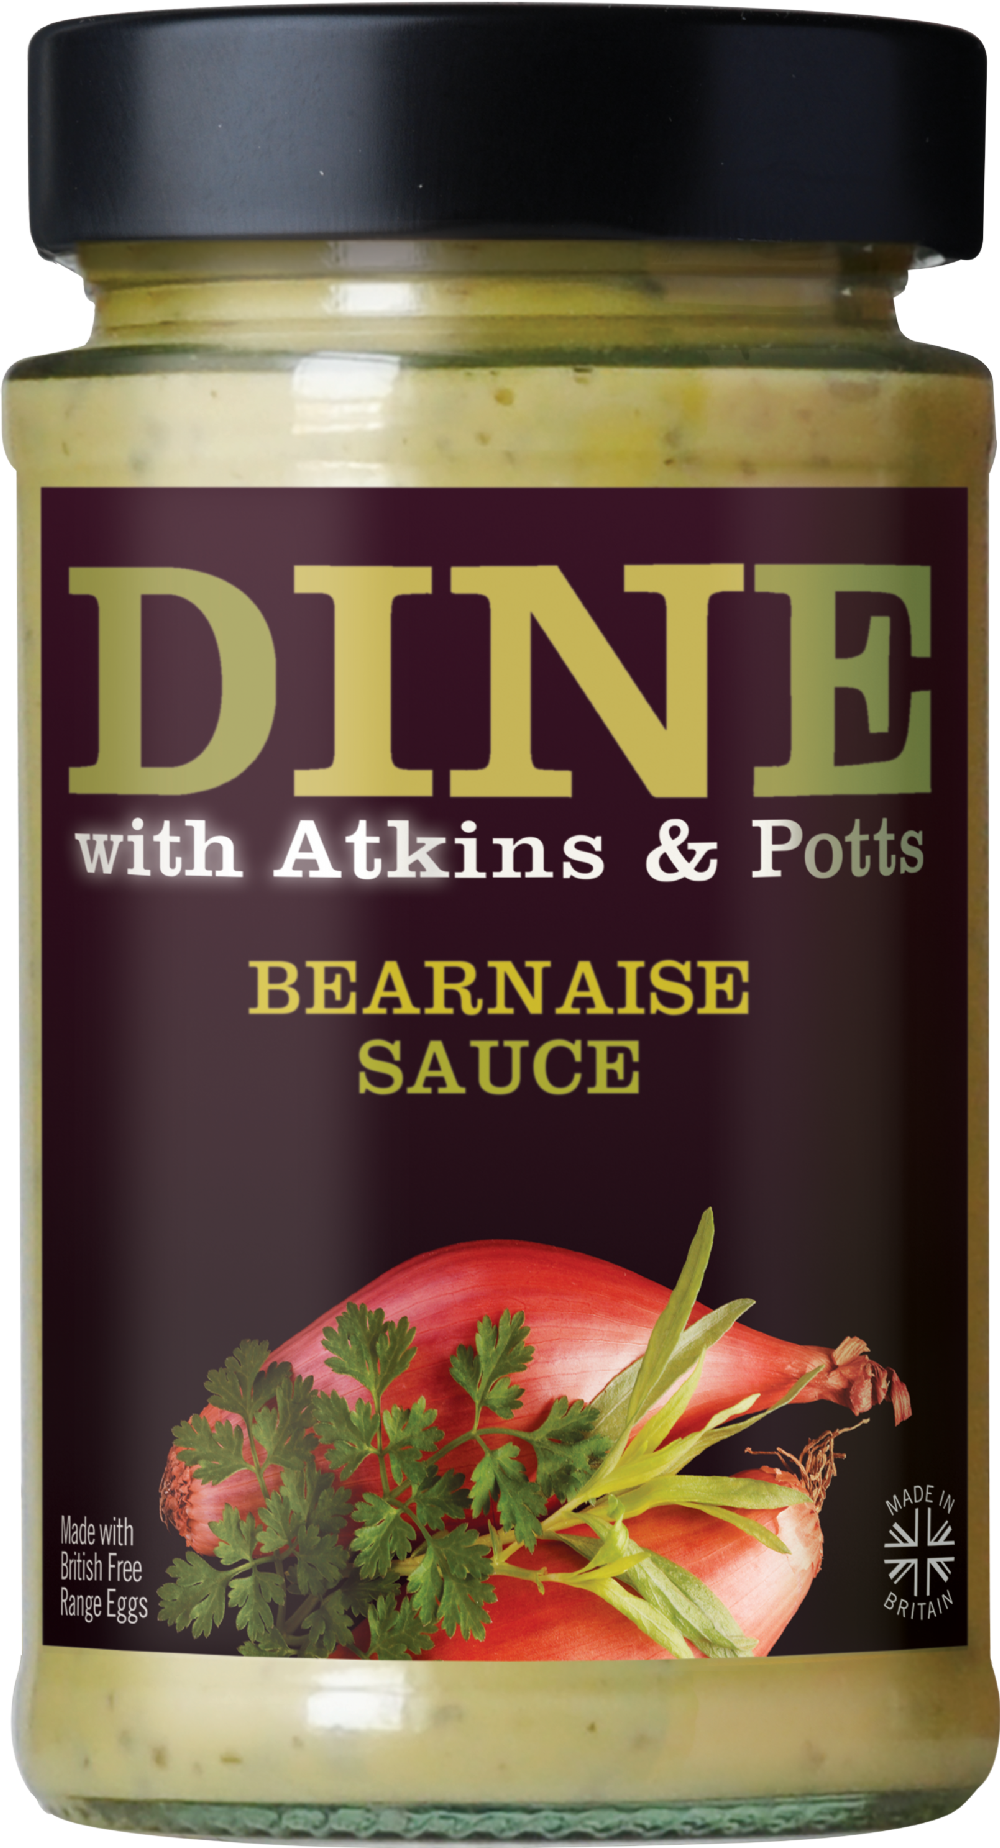 ATKINS & POTTS Bearnaise Sauce 190g